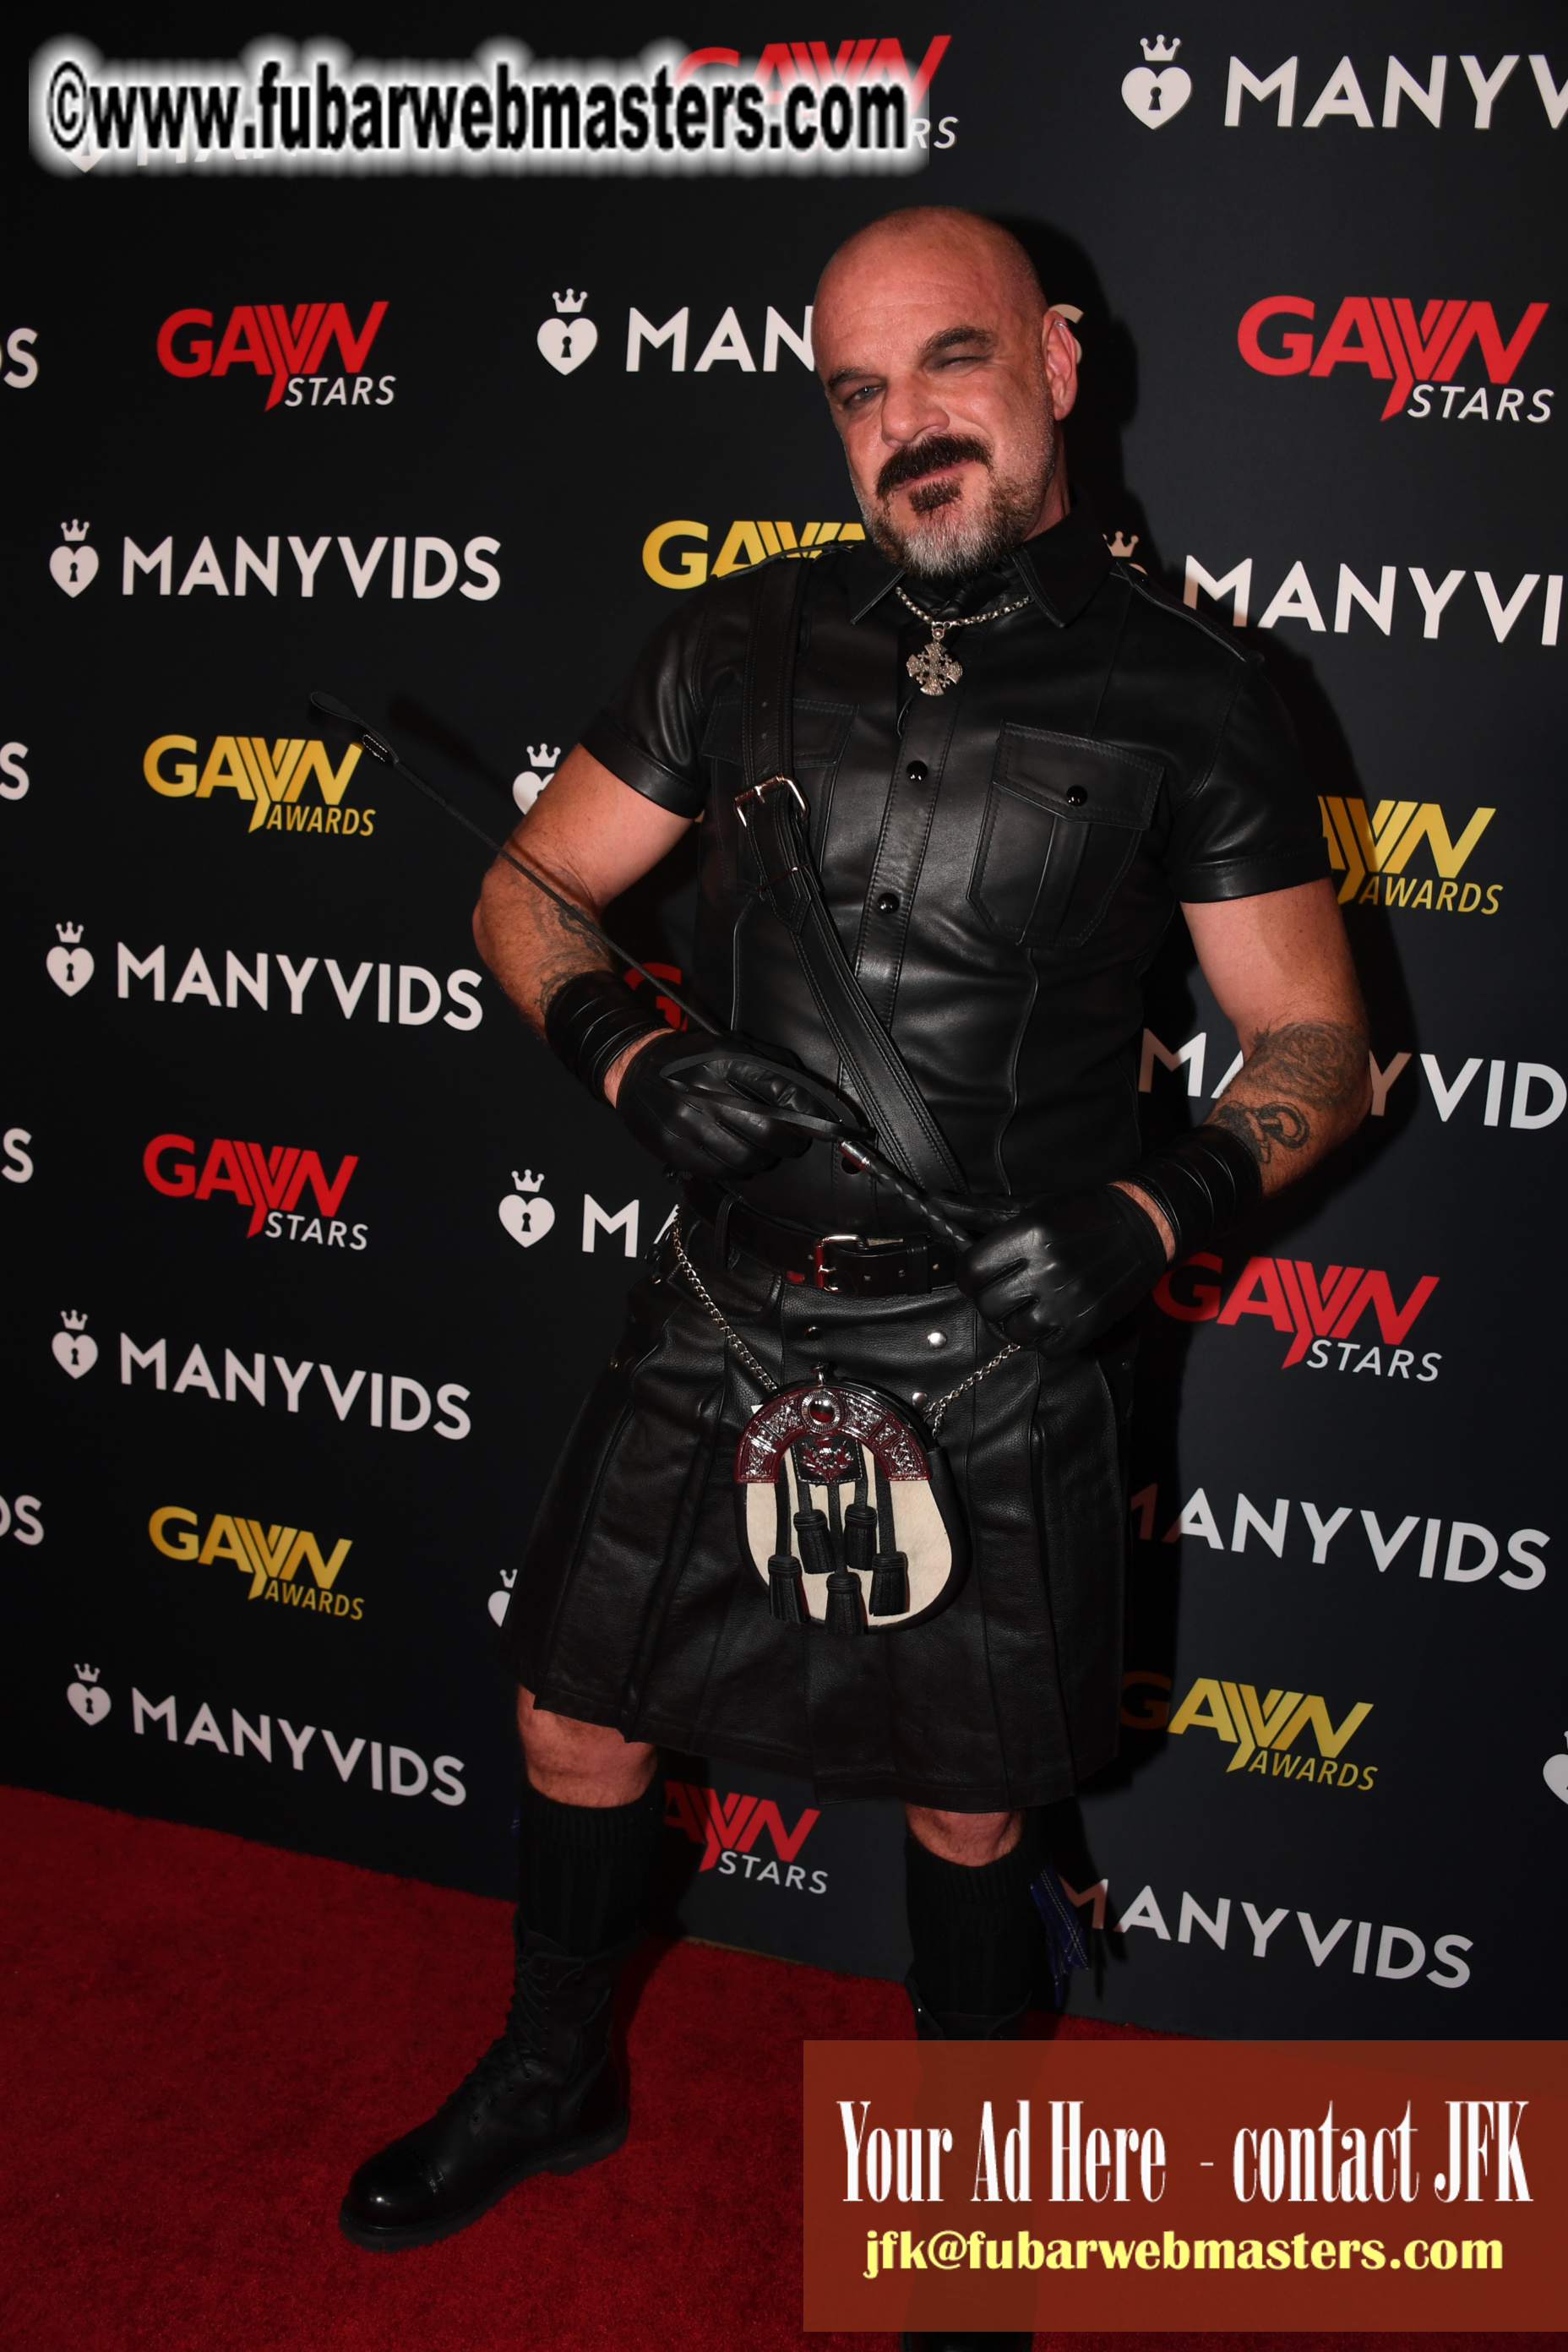 GayVN Awards 2020 Red Carpet